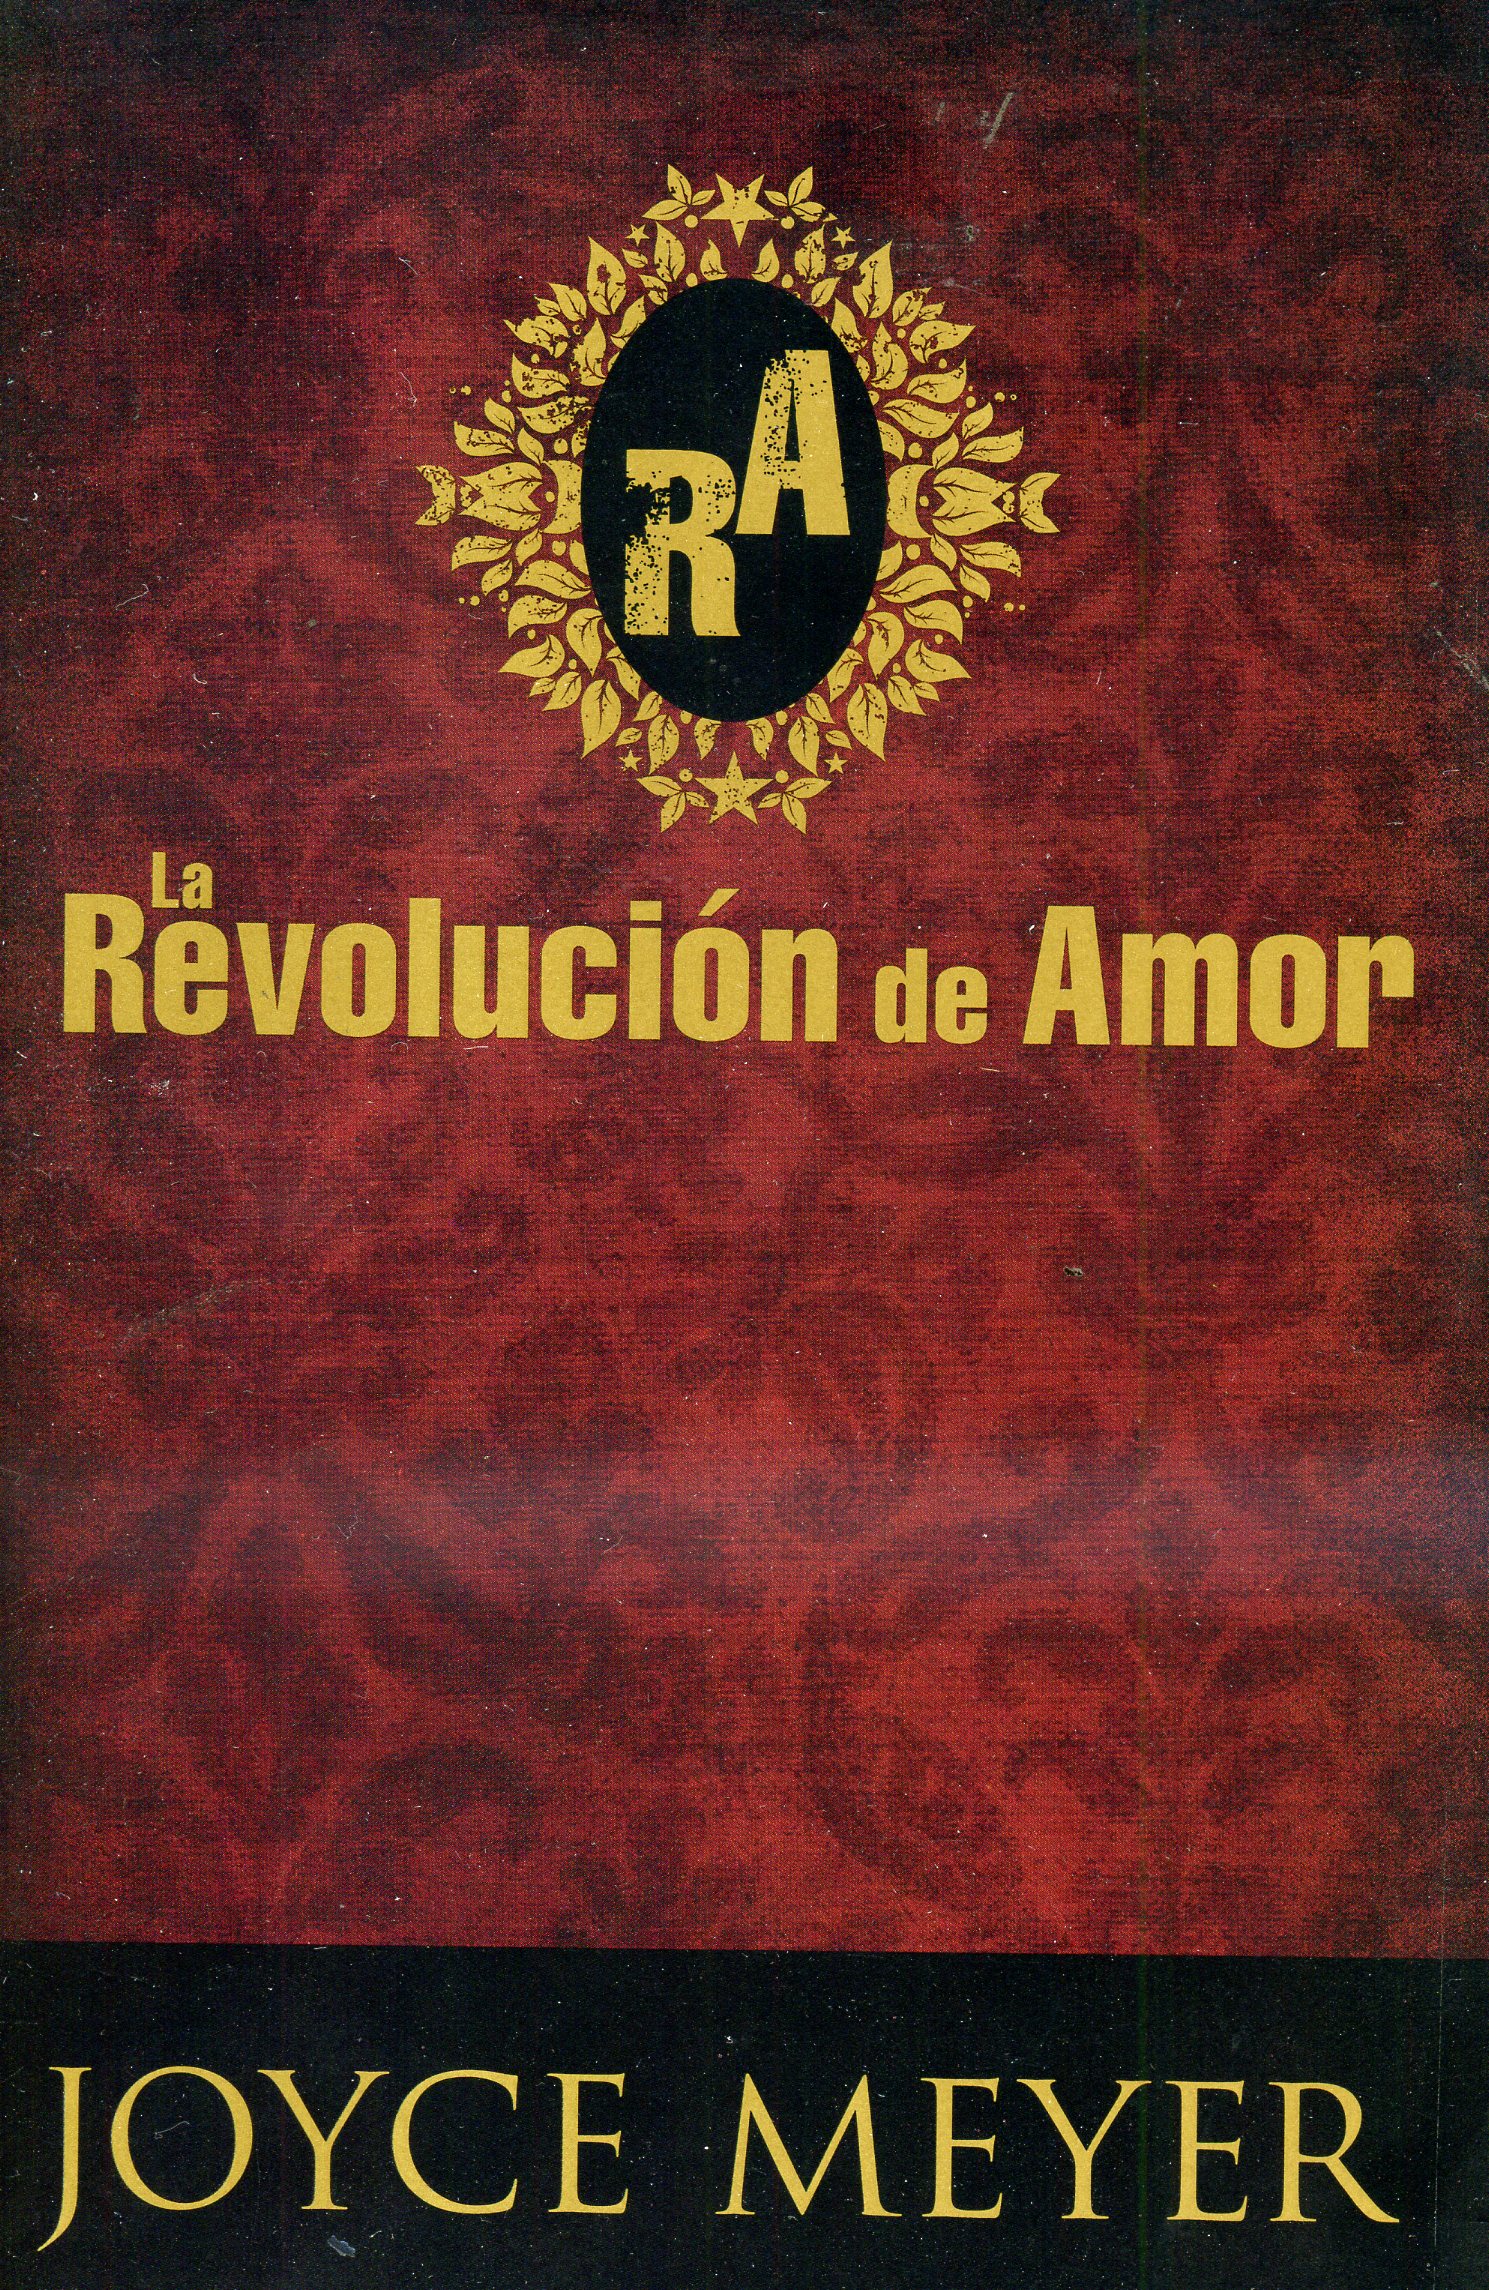 La revolución de amor